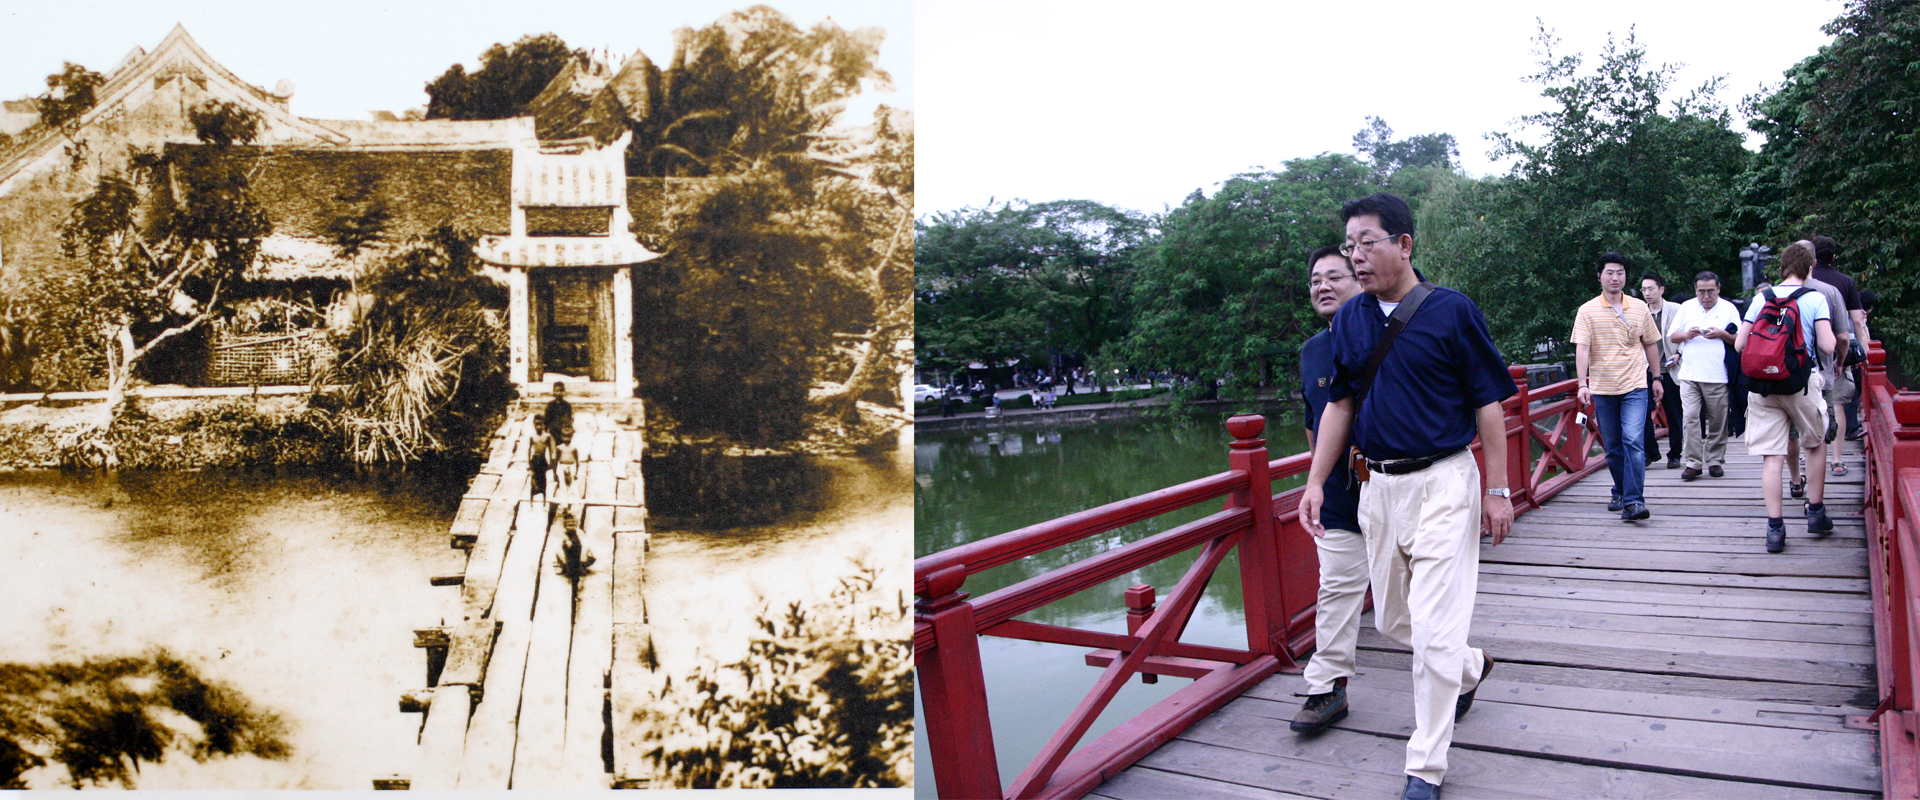 Những hình ảnh thú vị về sự đổi thay của Hà Nội sau 100 năm - Ảnh 6.